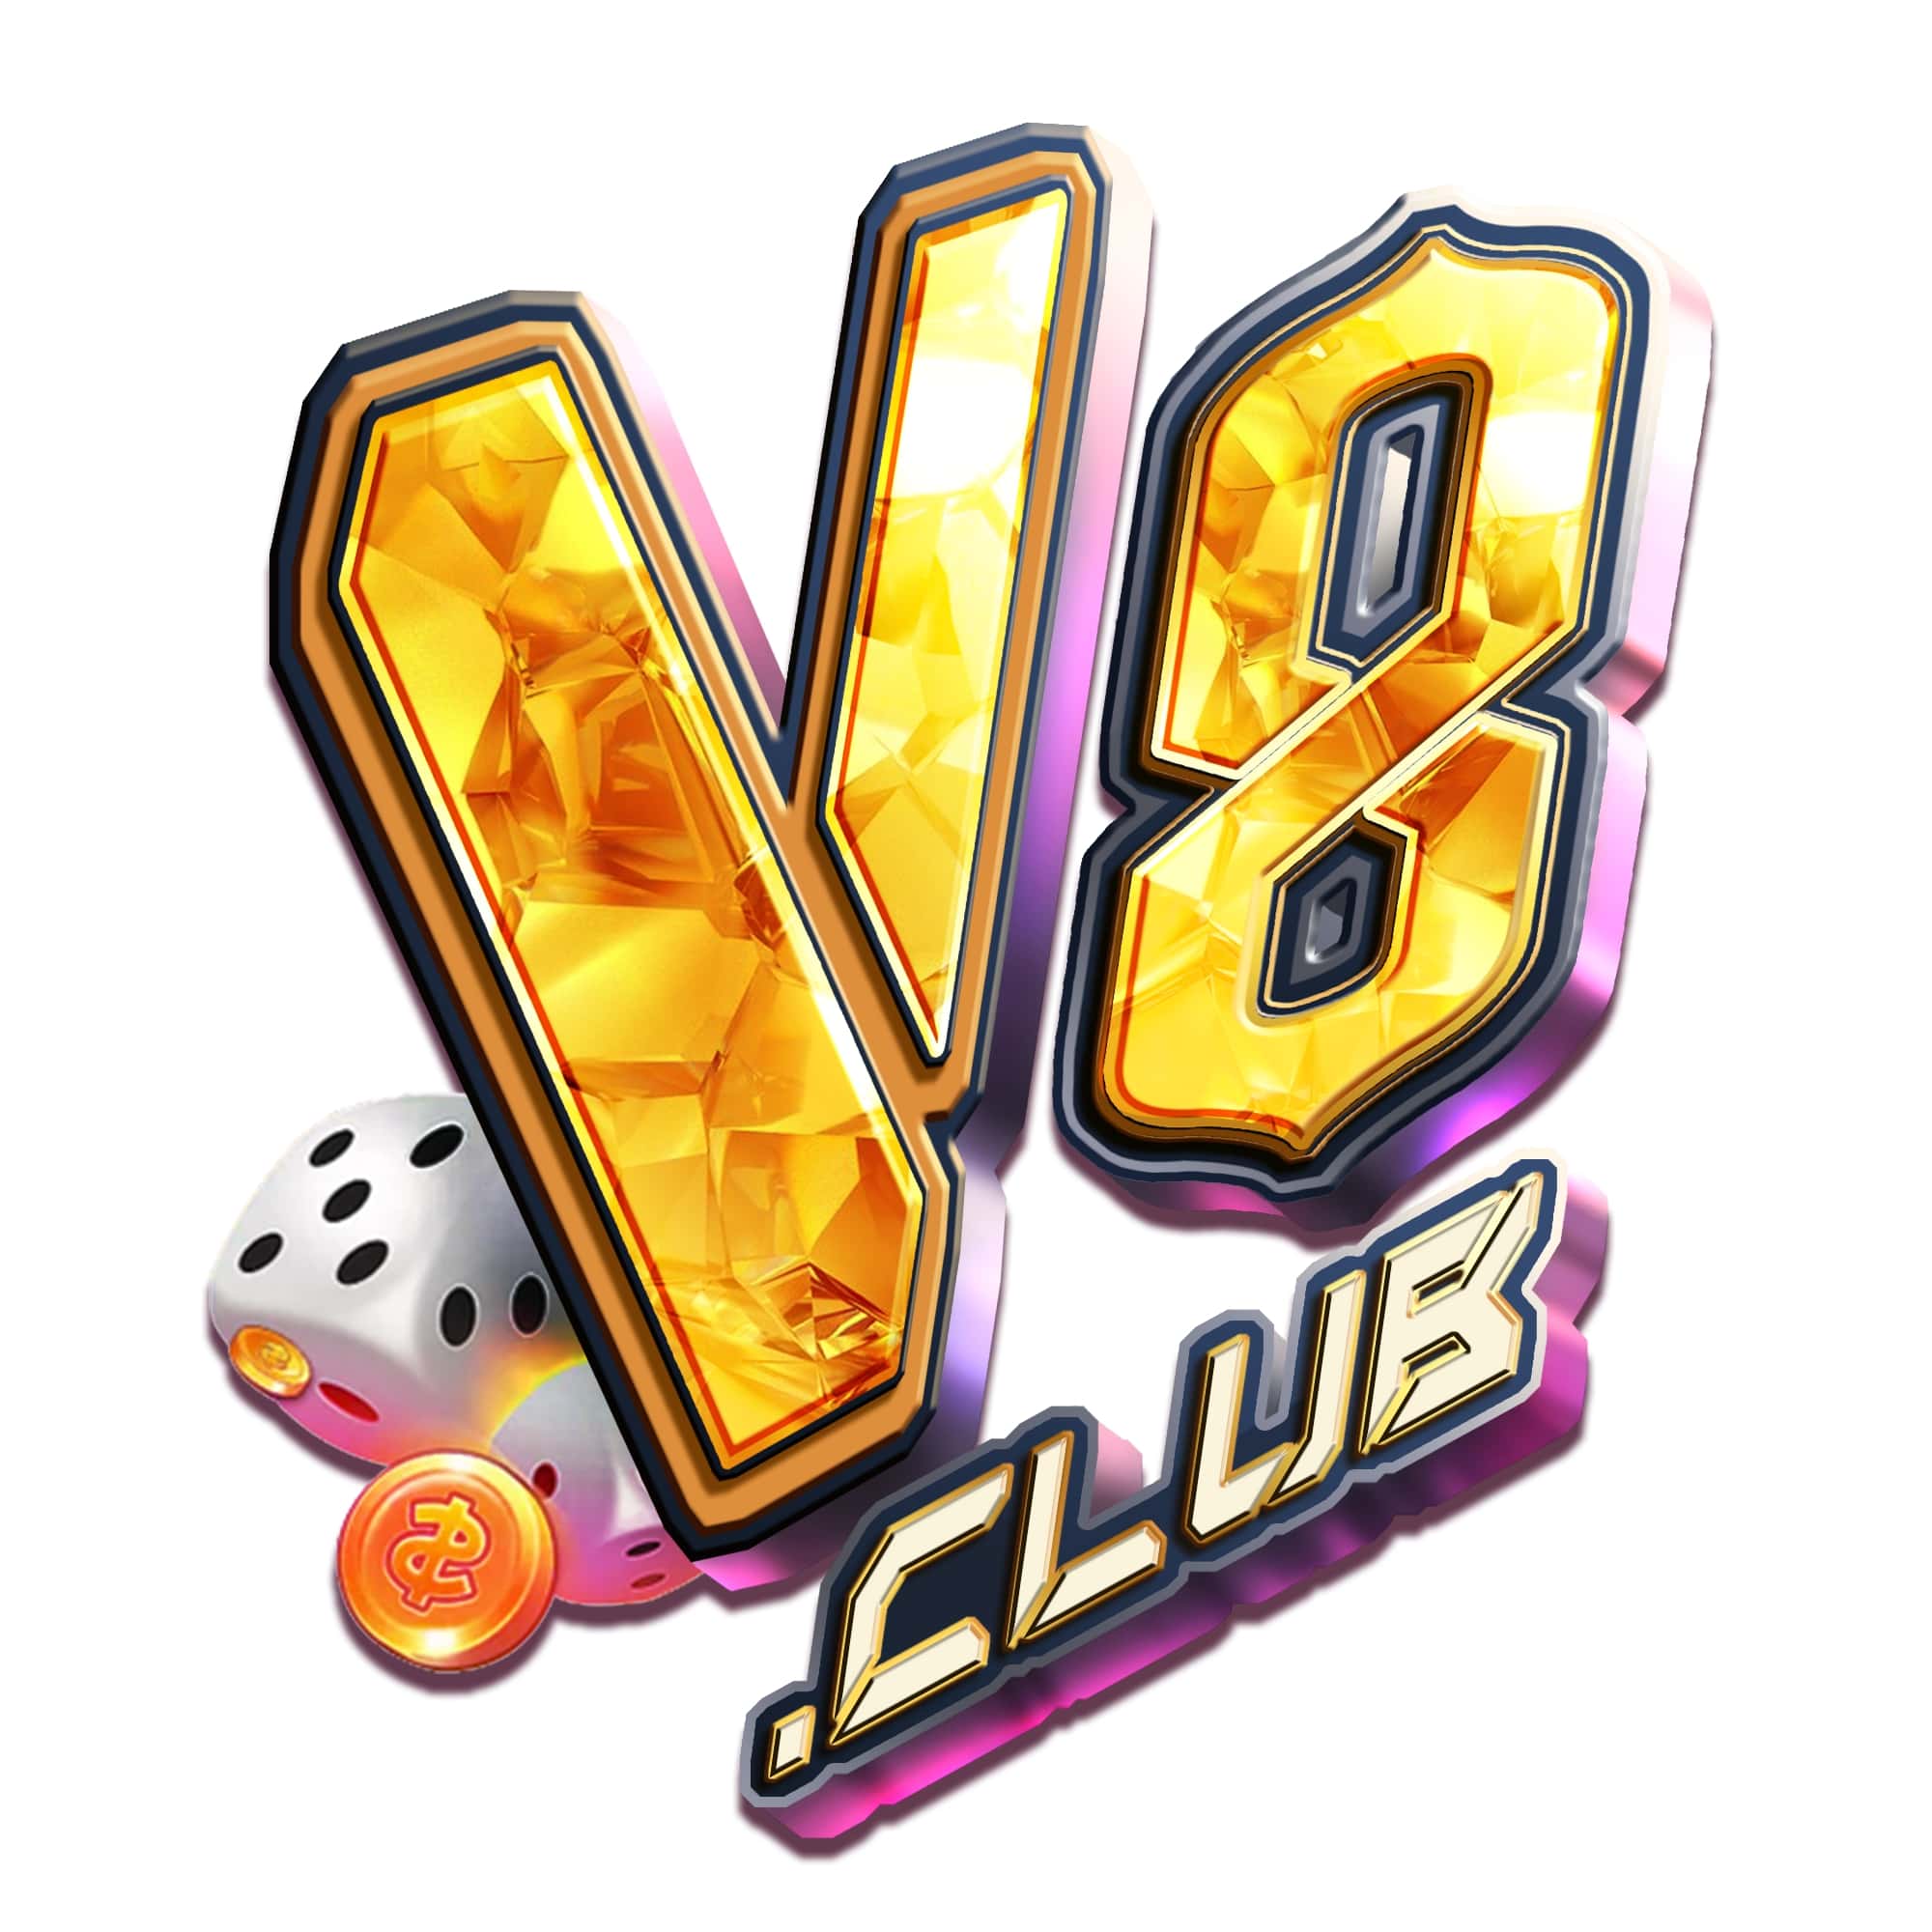 Giới thiệu cổng game bài đổi thưởng V8 hàng đầu tại Việt Nam